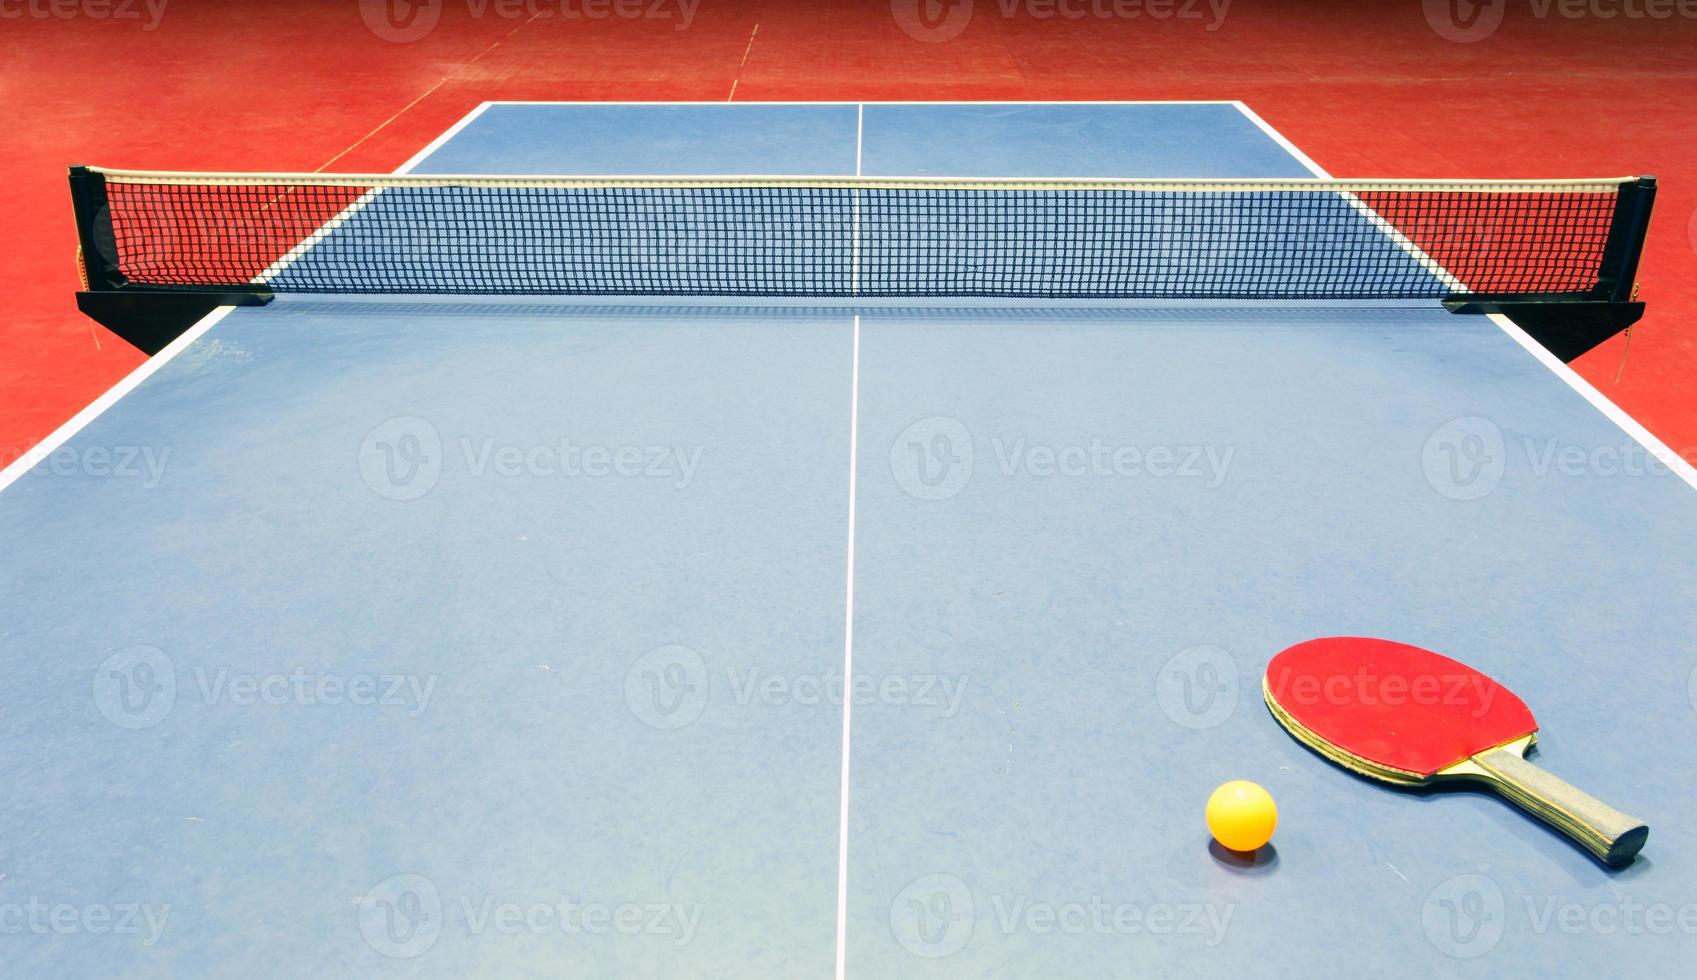 Tischtennisausrüstung - Schläger, Ball und Netz foto